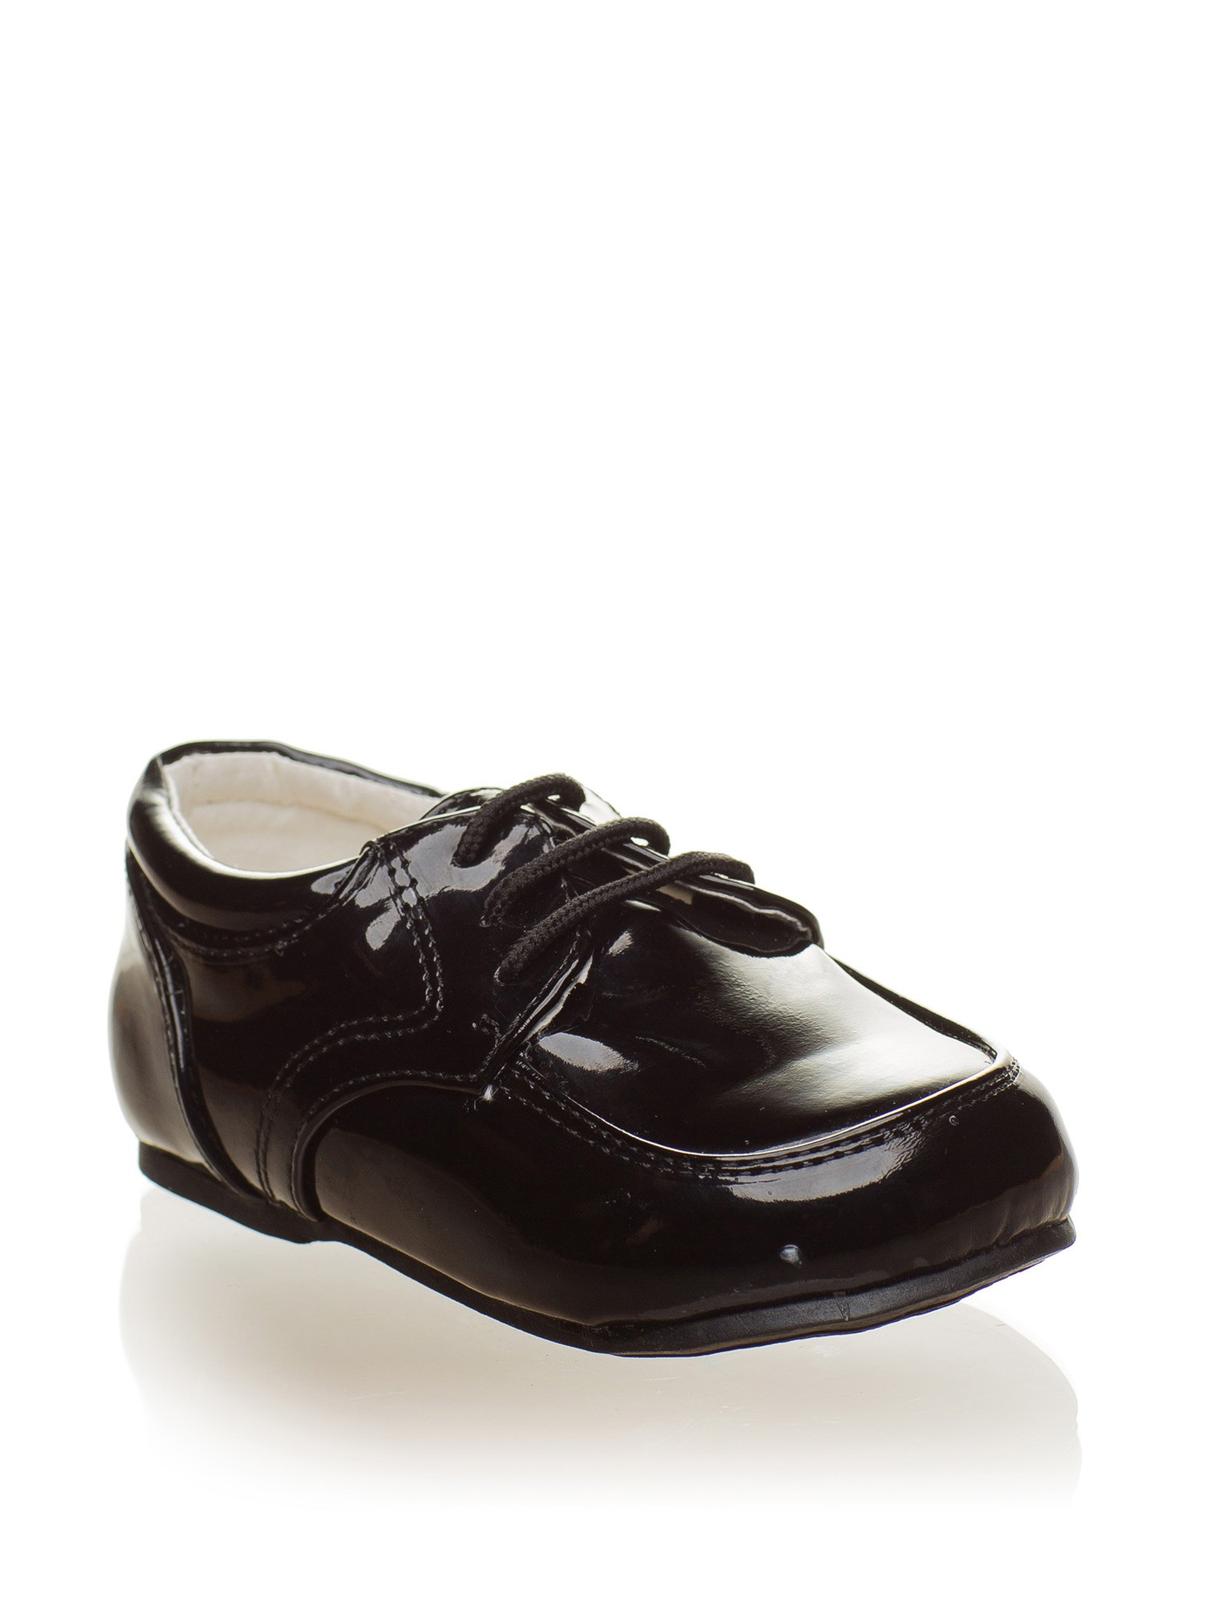 SKLADEM - černé lakované dětské boty - Obrázek č. 1